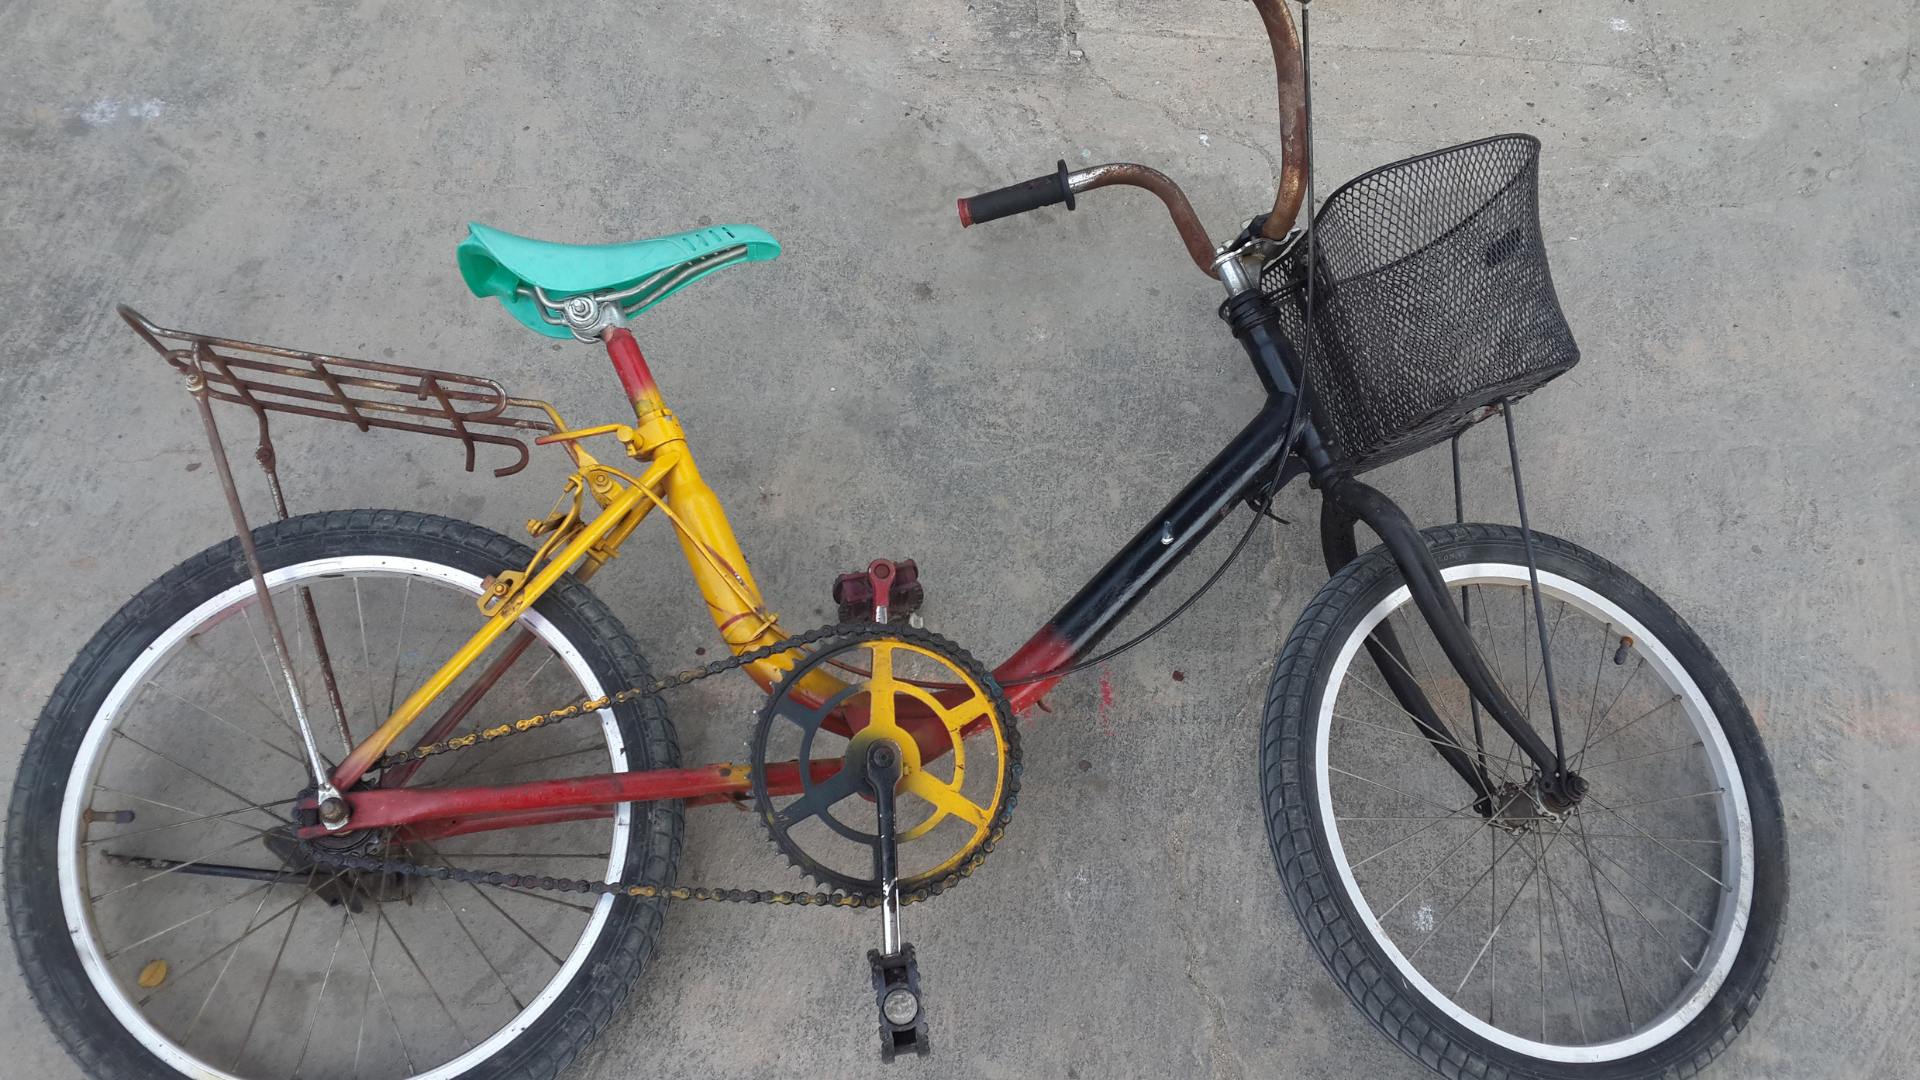 Sonhar com Bicicleta velha: Qual é o Significado?